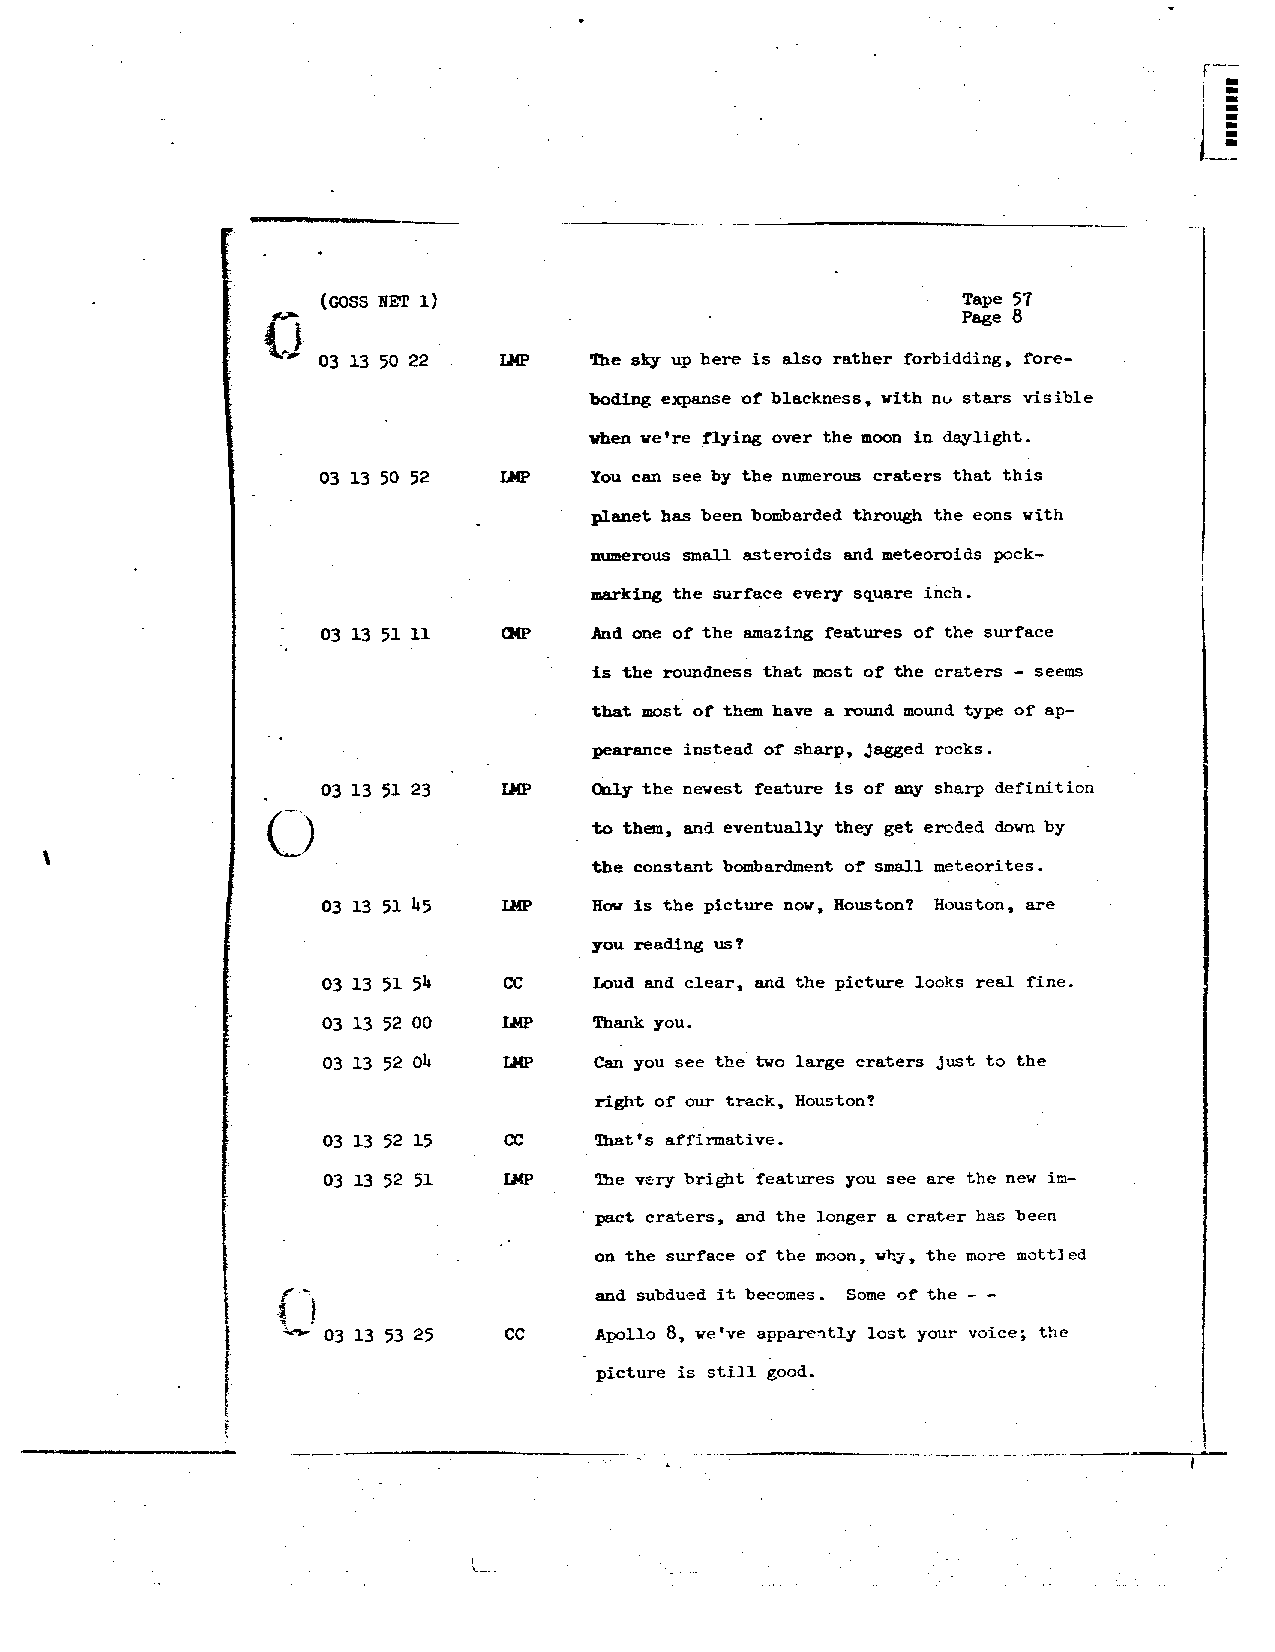 Page 457 of Apollo 8’s original transcript